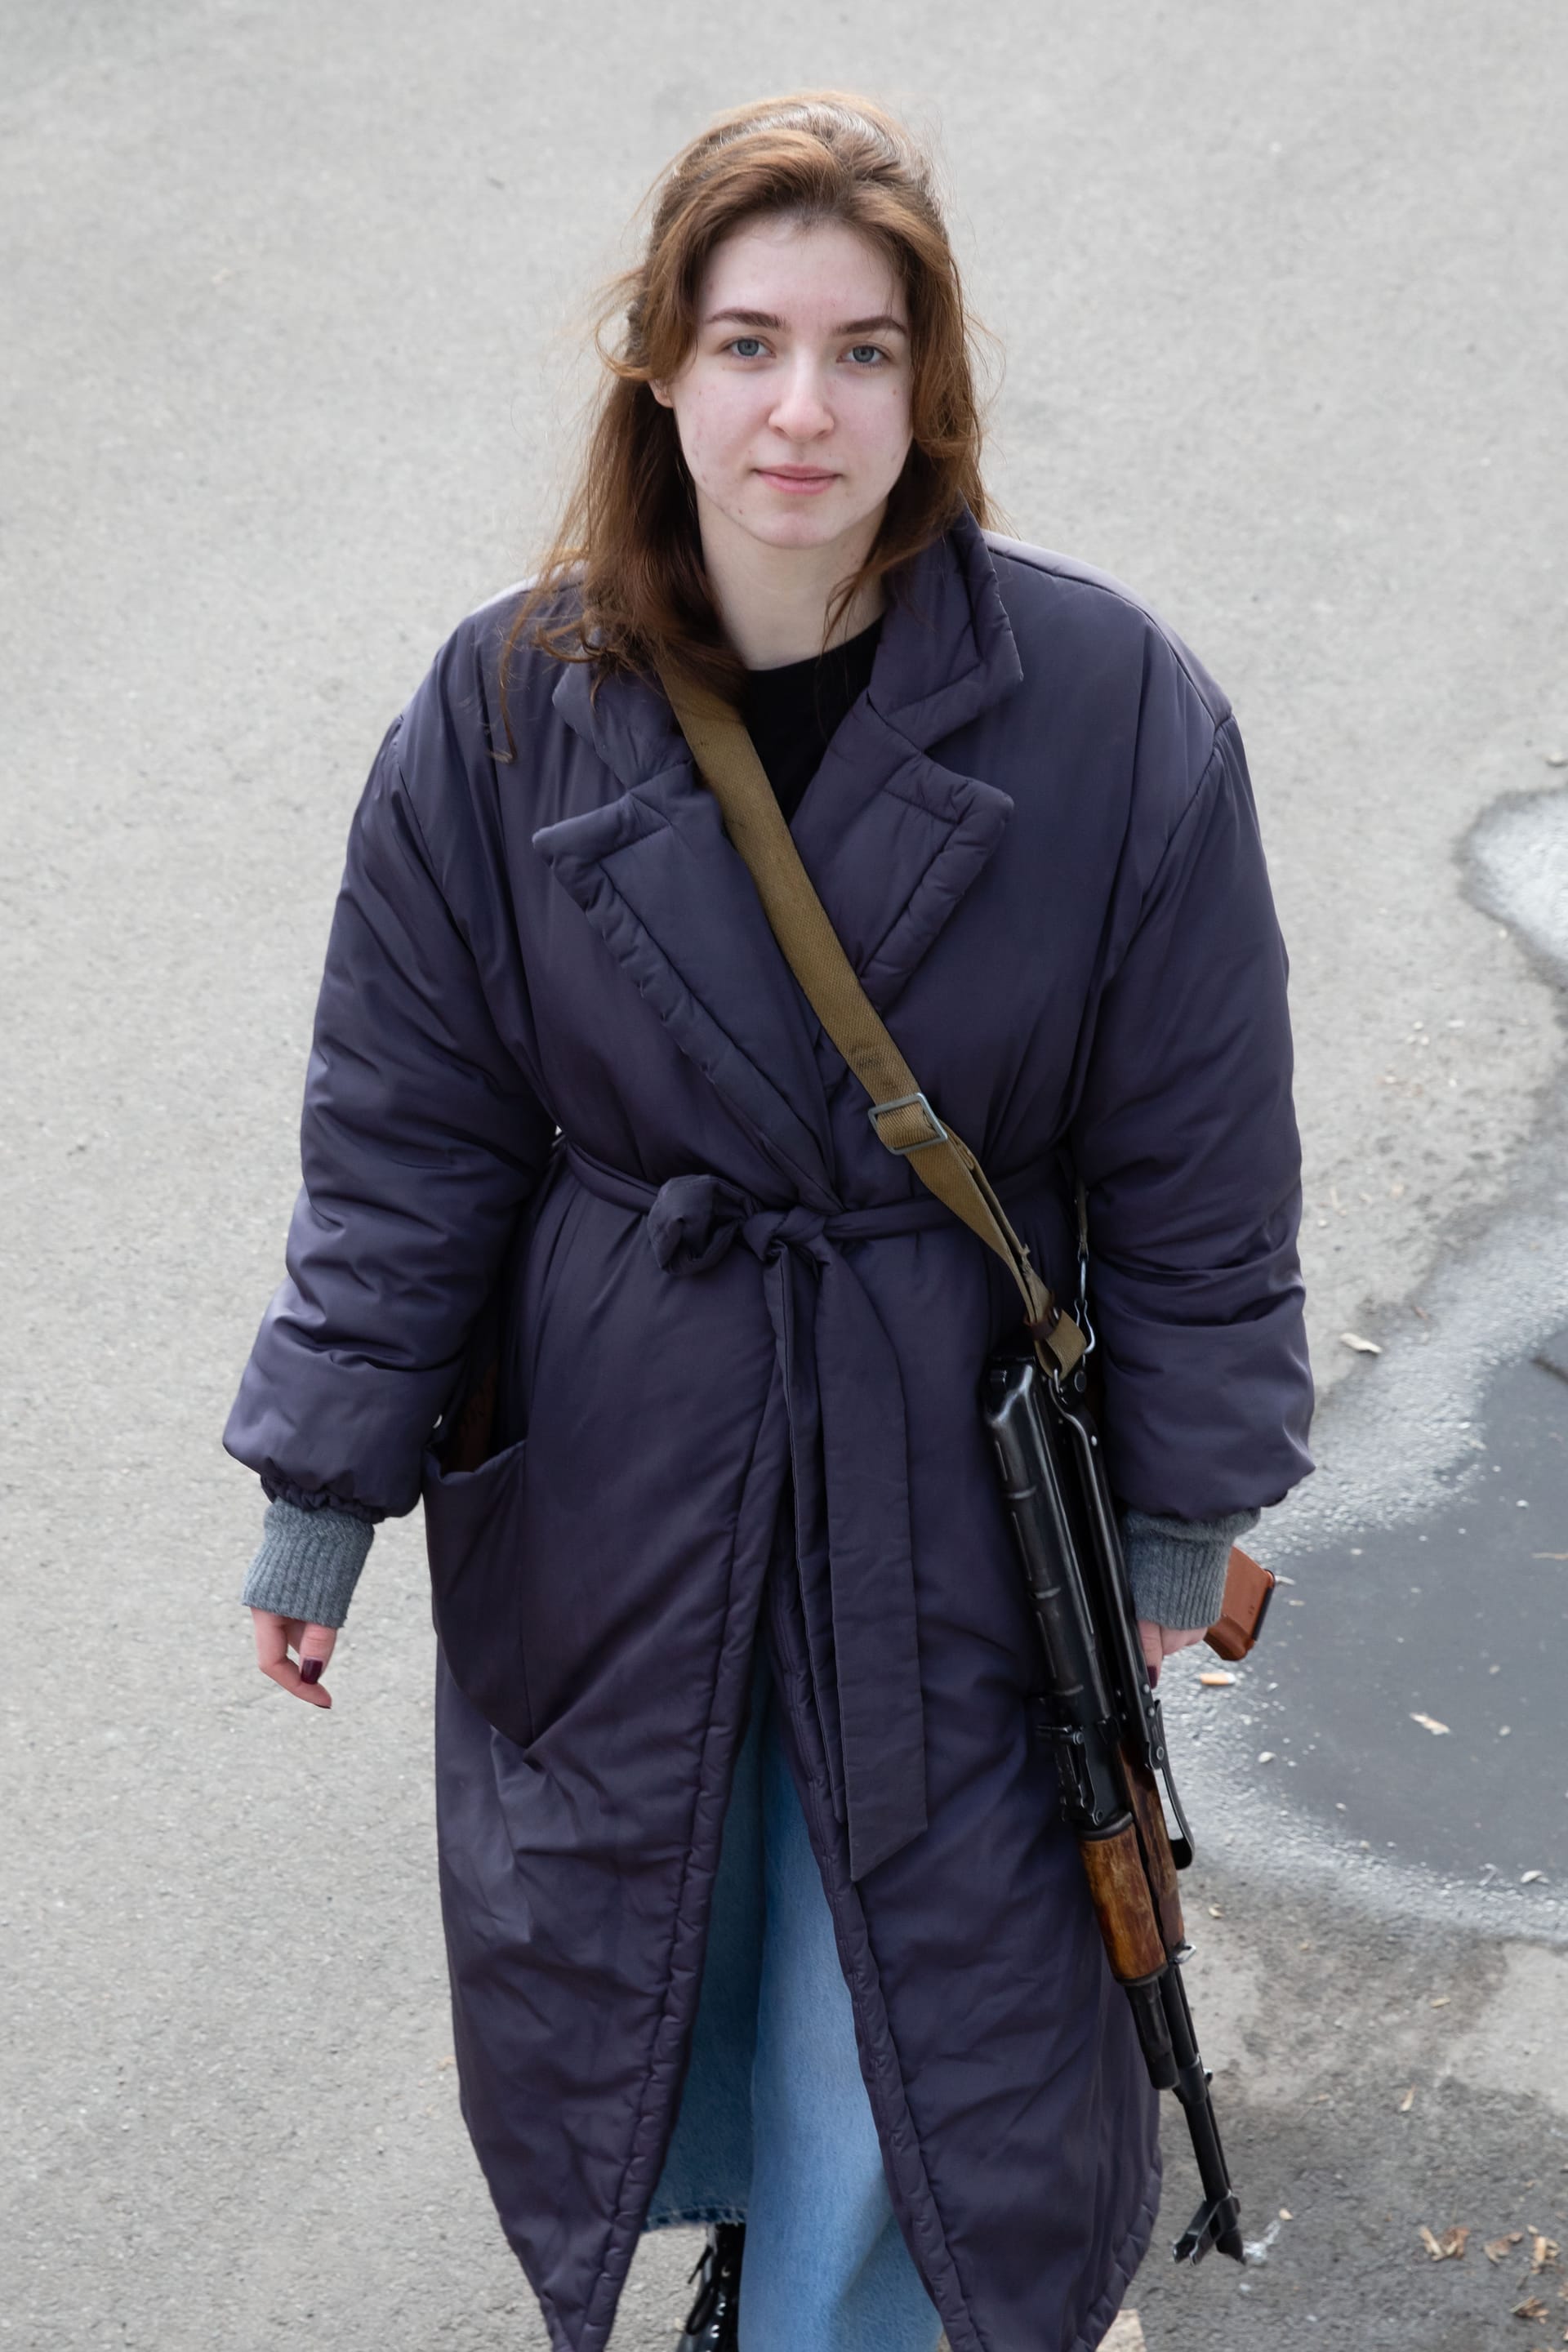 Arieva mit Waffe: "Nicht so schwer, wie Deutsch zu lernen."